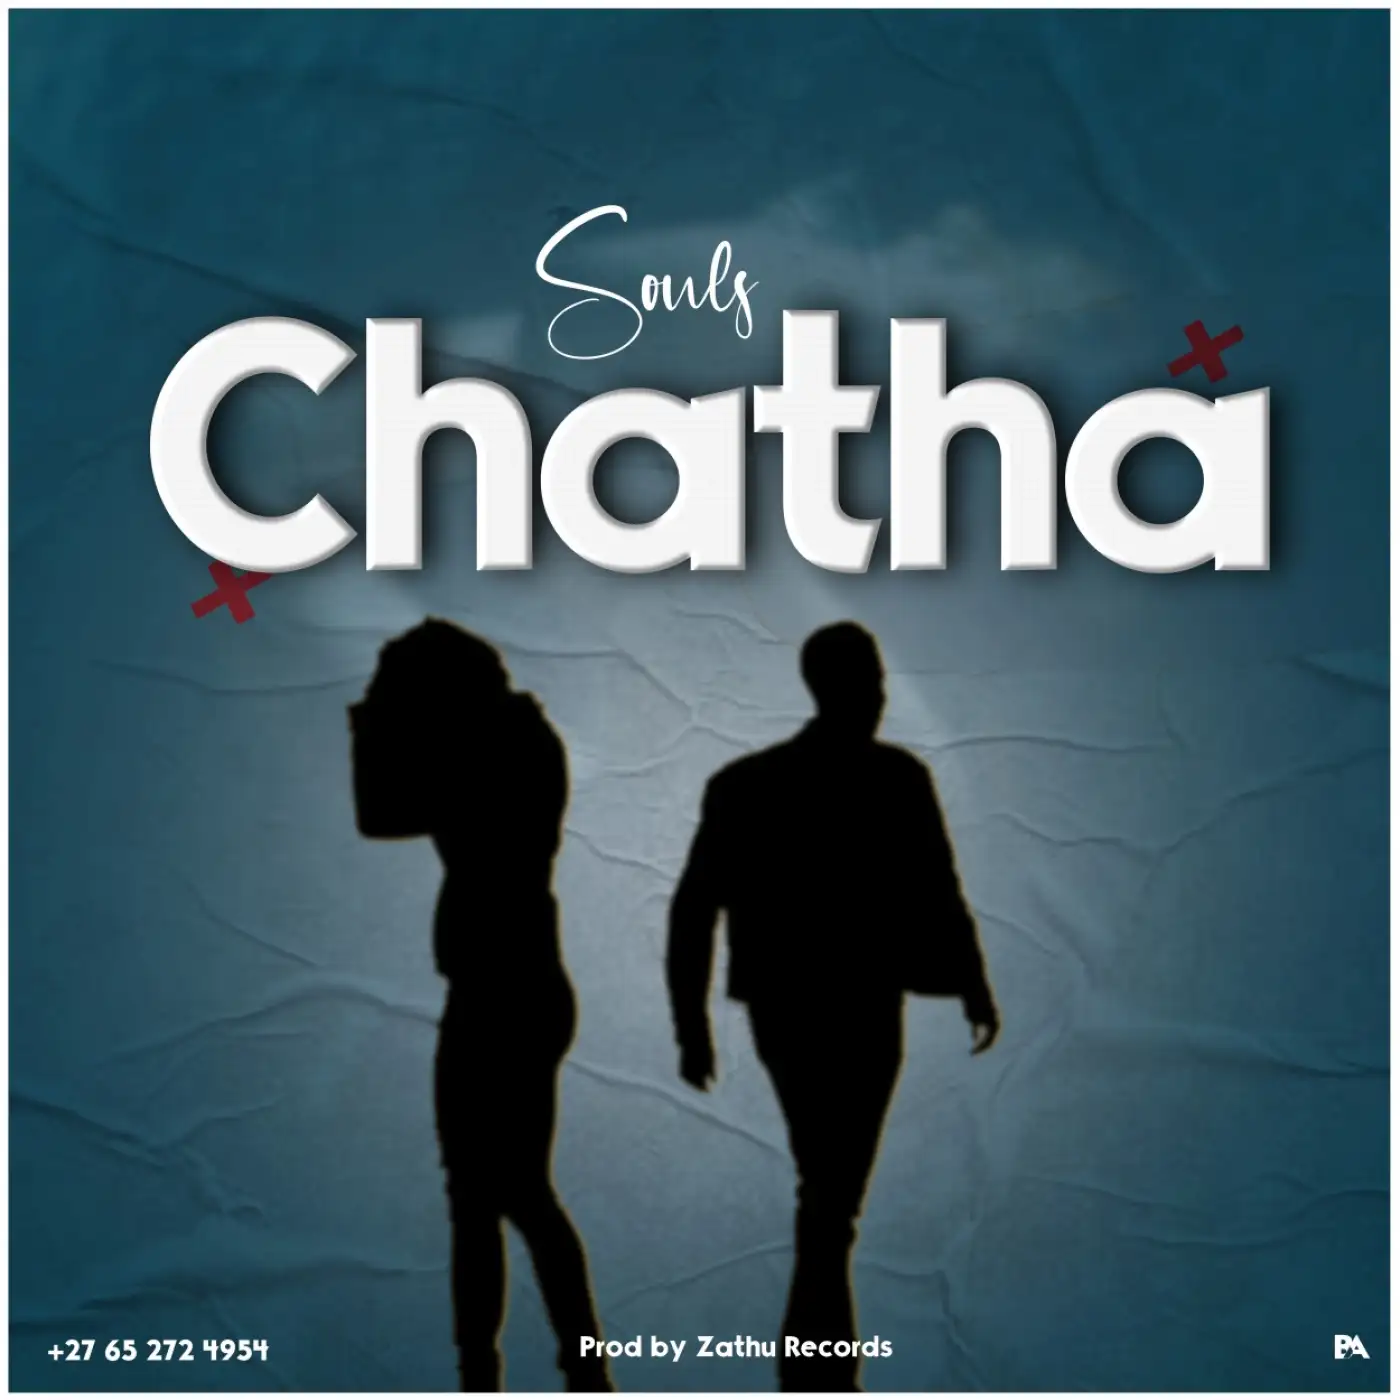 souls-chatha-prod-zathu-mp3-download-mp3 download